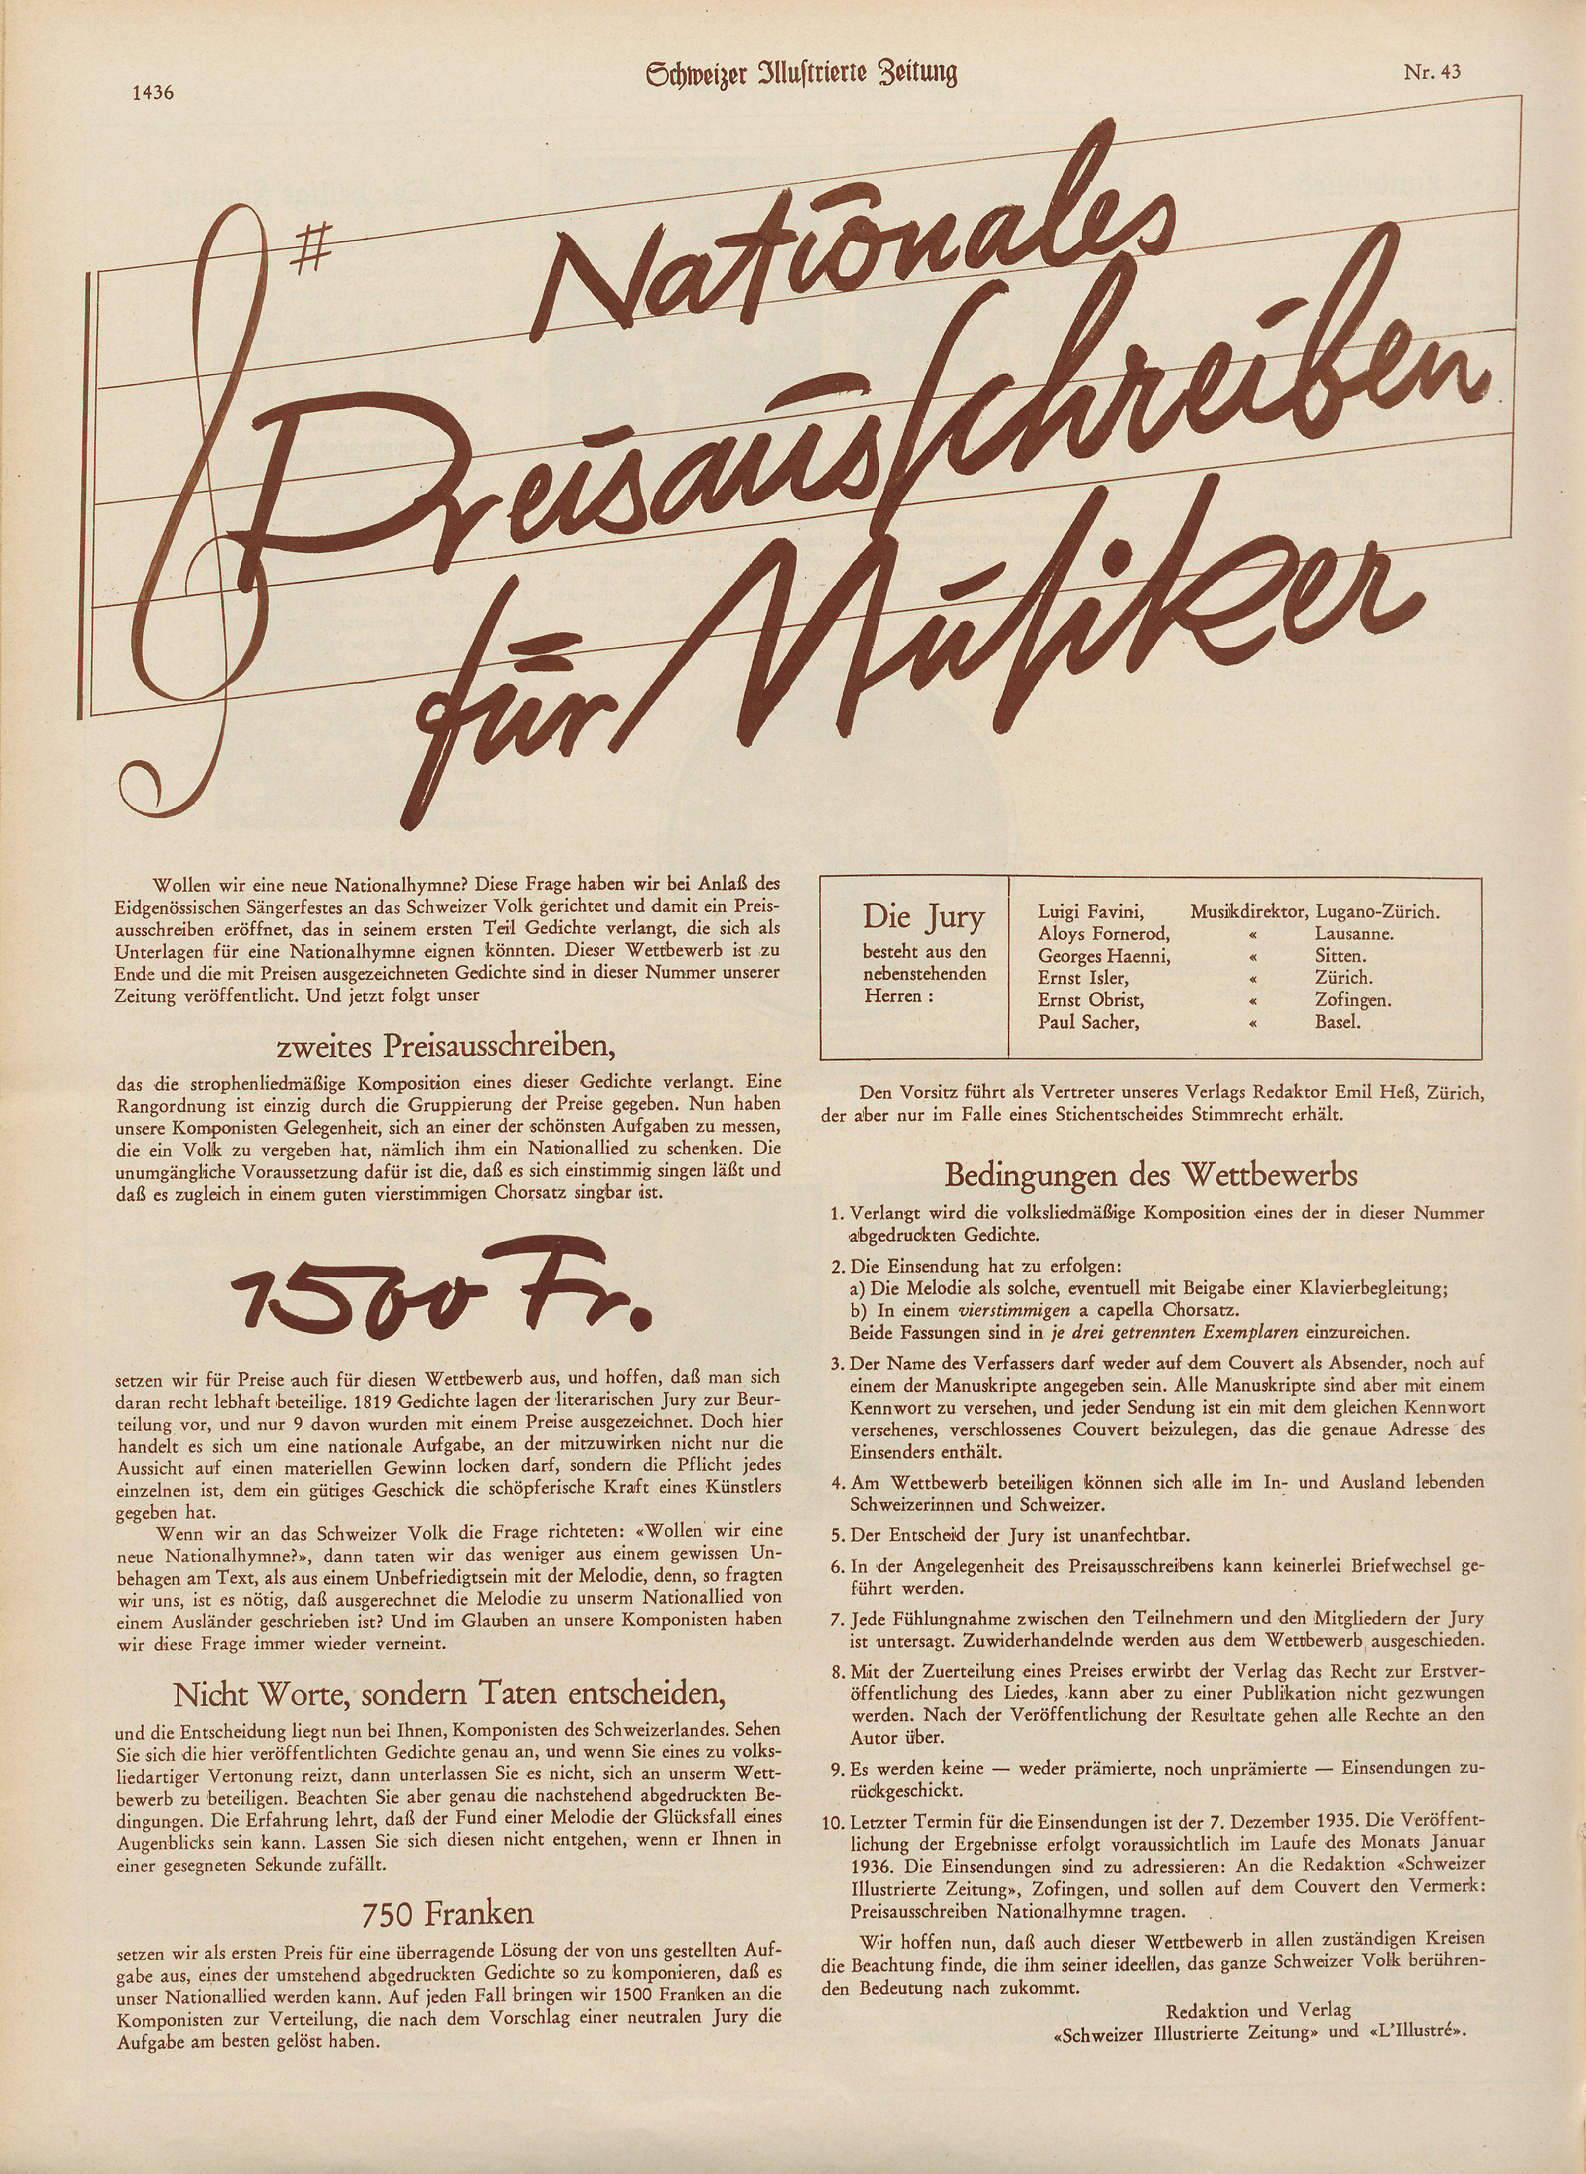 „Nationales Preisausschreiben für Musiker", Schweizer Illustrierte Zeitung, Nr. 43, 23. Oktober 1935